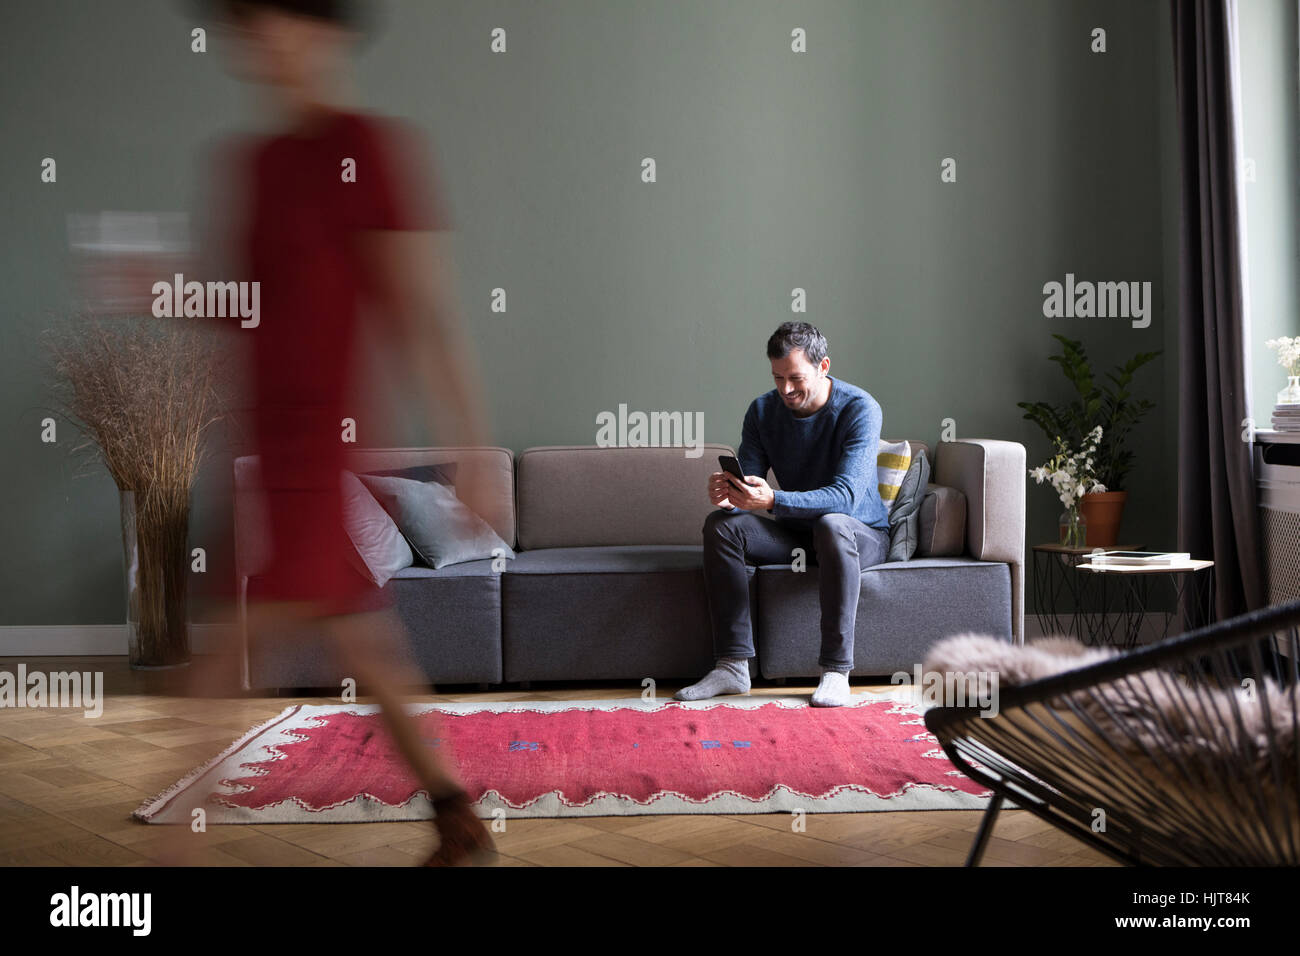 Mann sitzt auf der Couch im Wohnzimmer, während seine Freundin vorbei in den Vordergrund Stockfoto